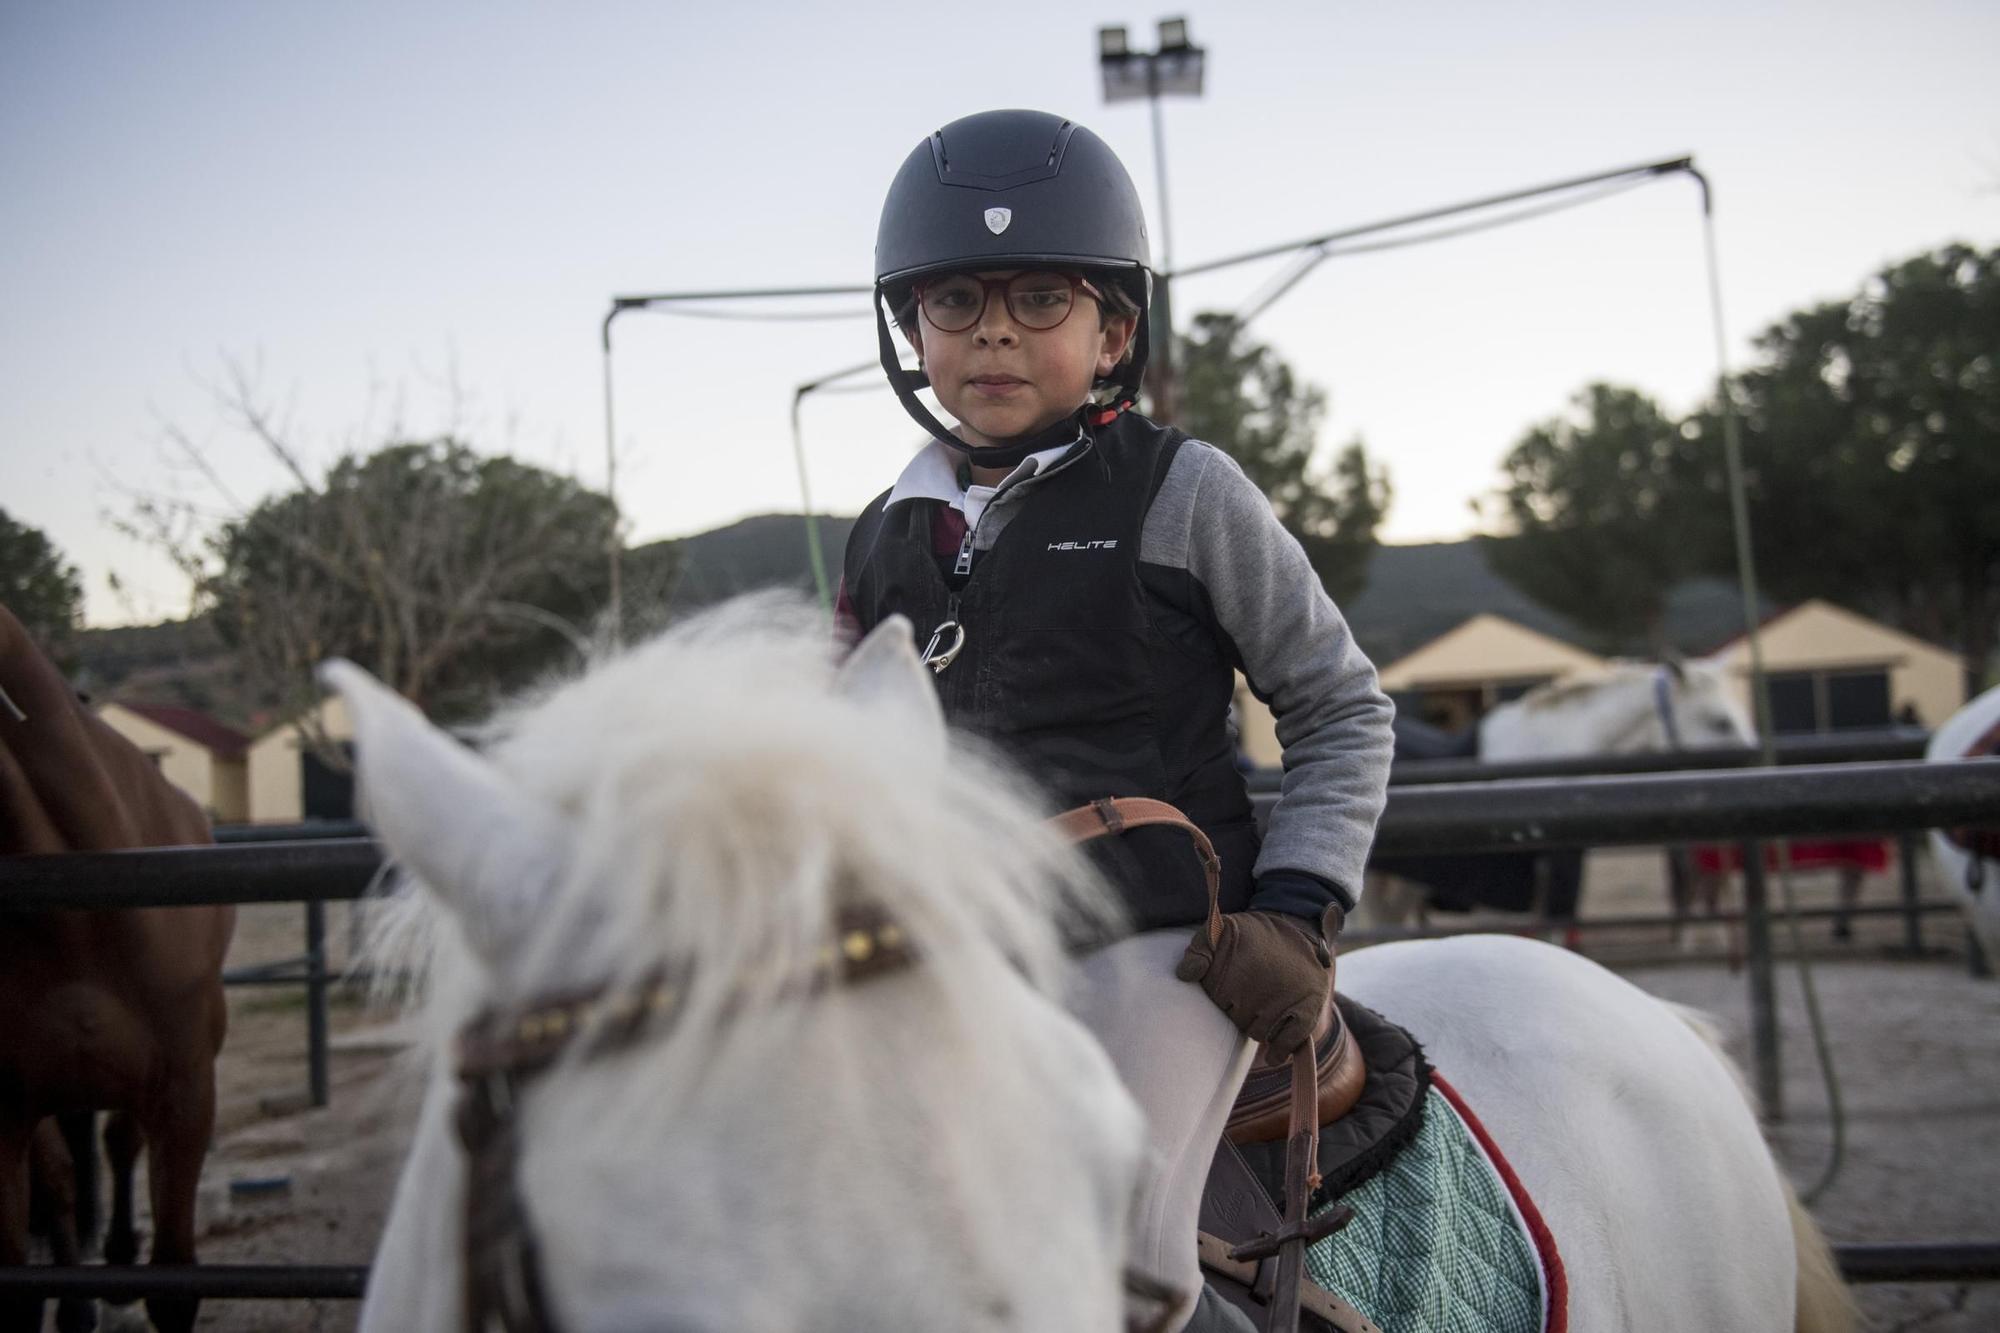 GALERÍA. Niños compitiendo a lomos de caballos, una pasión que crece